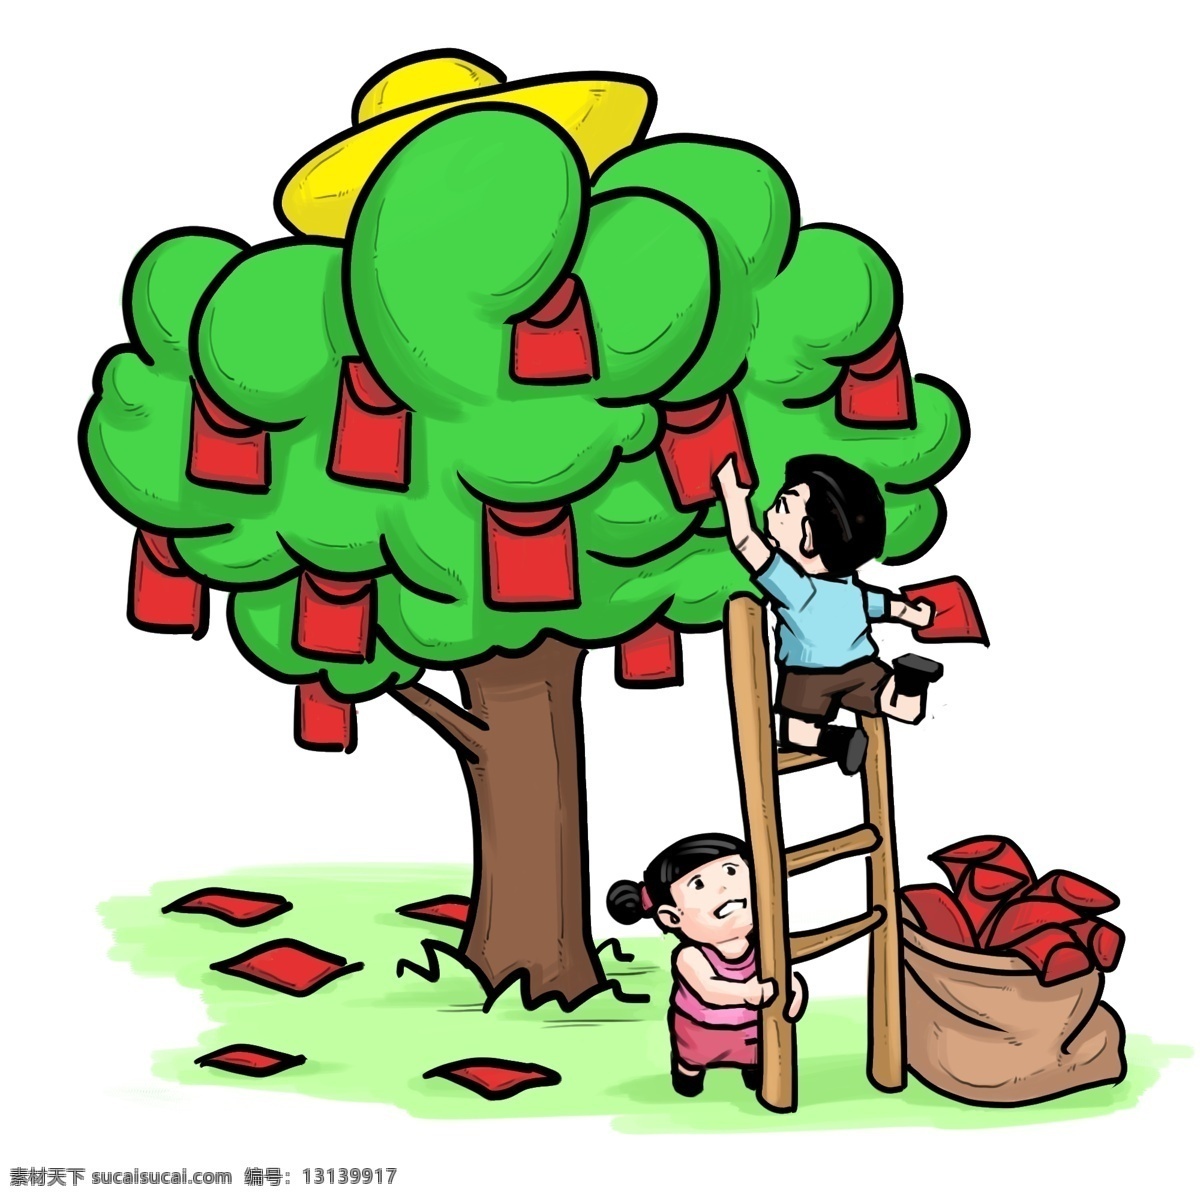 手绘 绿色 红包 树 插画 大大的红包 诱人的红包 装满 祝福 创意红包插画 手绘红包插画 圆鼓鼓的红包